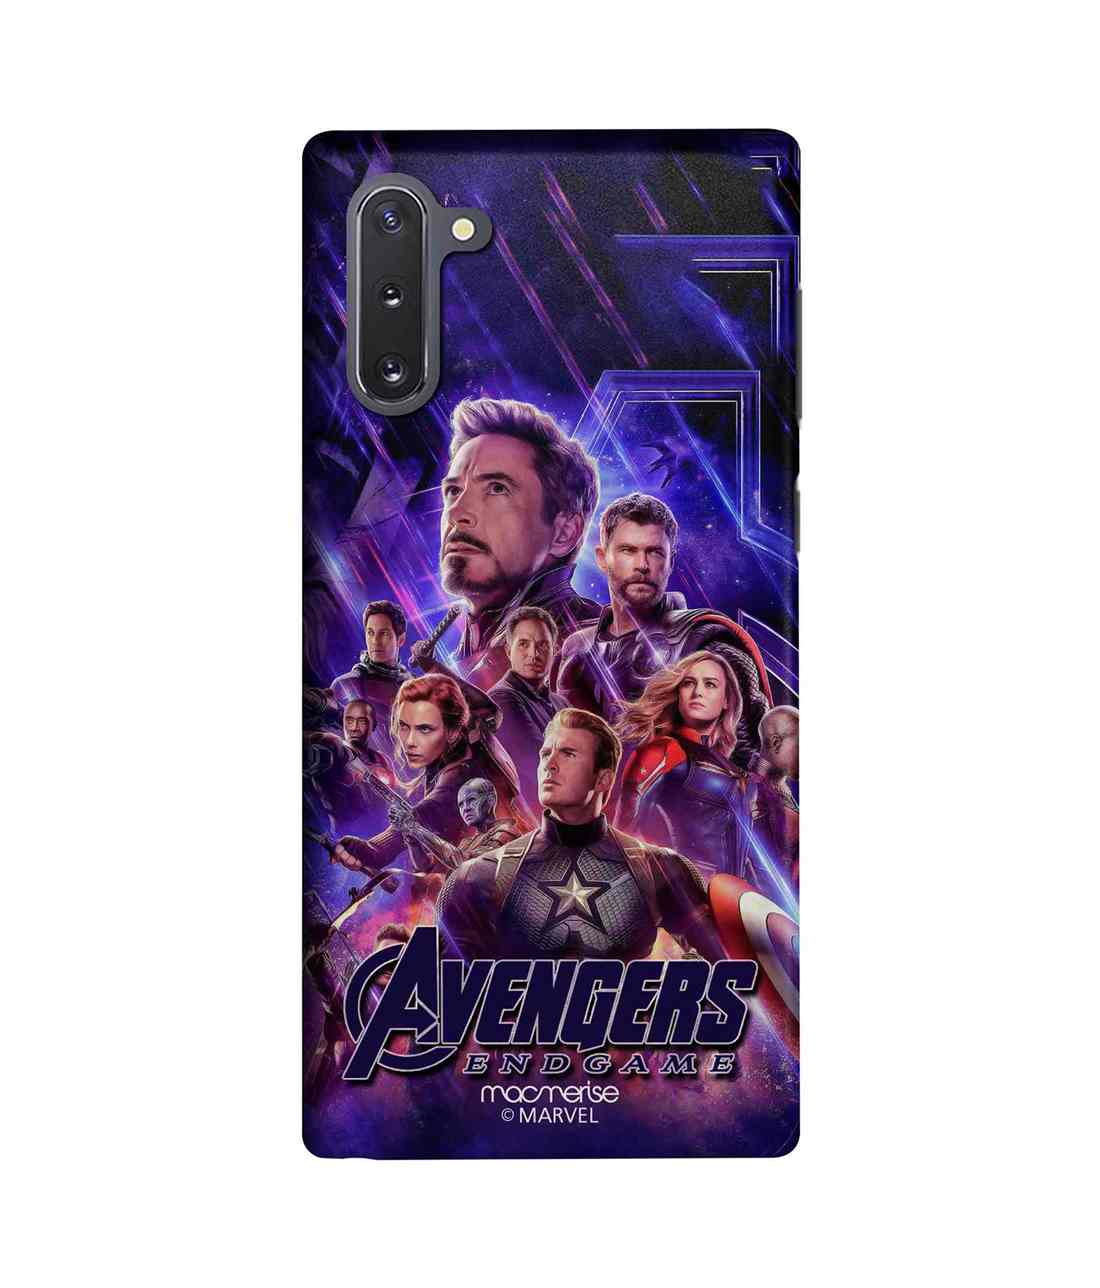 Buy Avengers Endgame Poster - Sleek Phone Case for Samsung Note10 Online